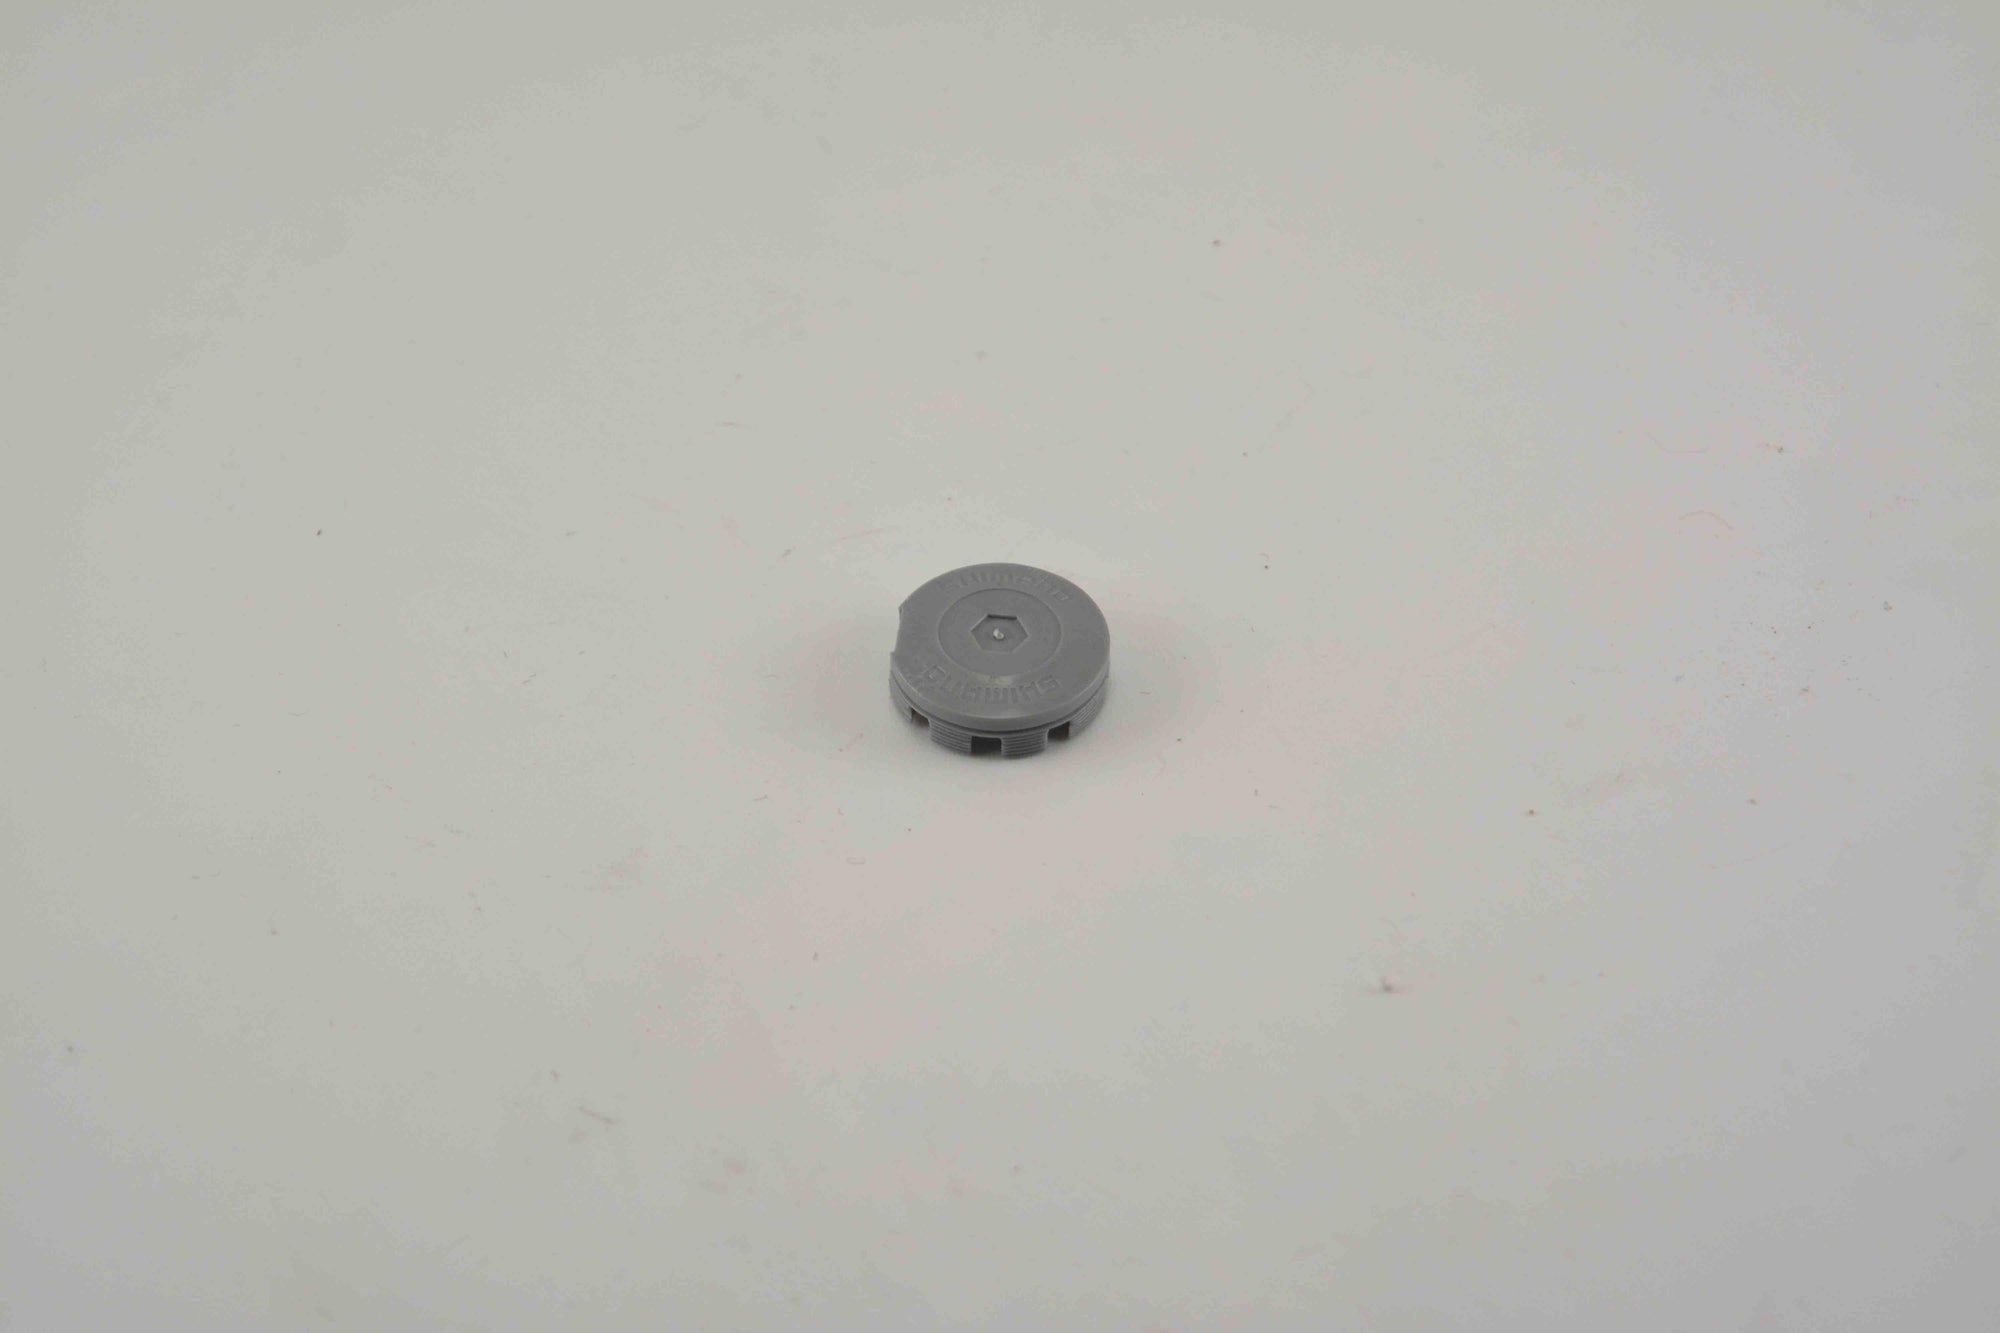 Shimano Staubkappe , Staubschutzkappe Shimano Kurbel Crank Dust Caps